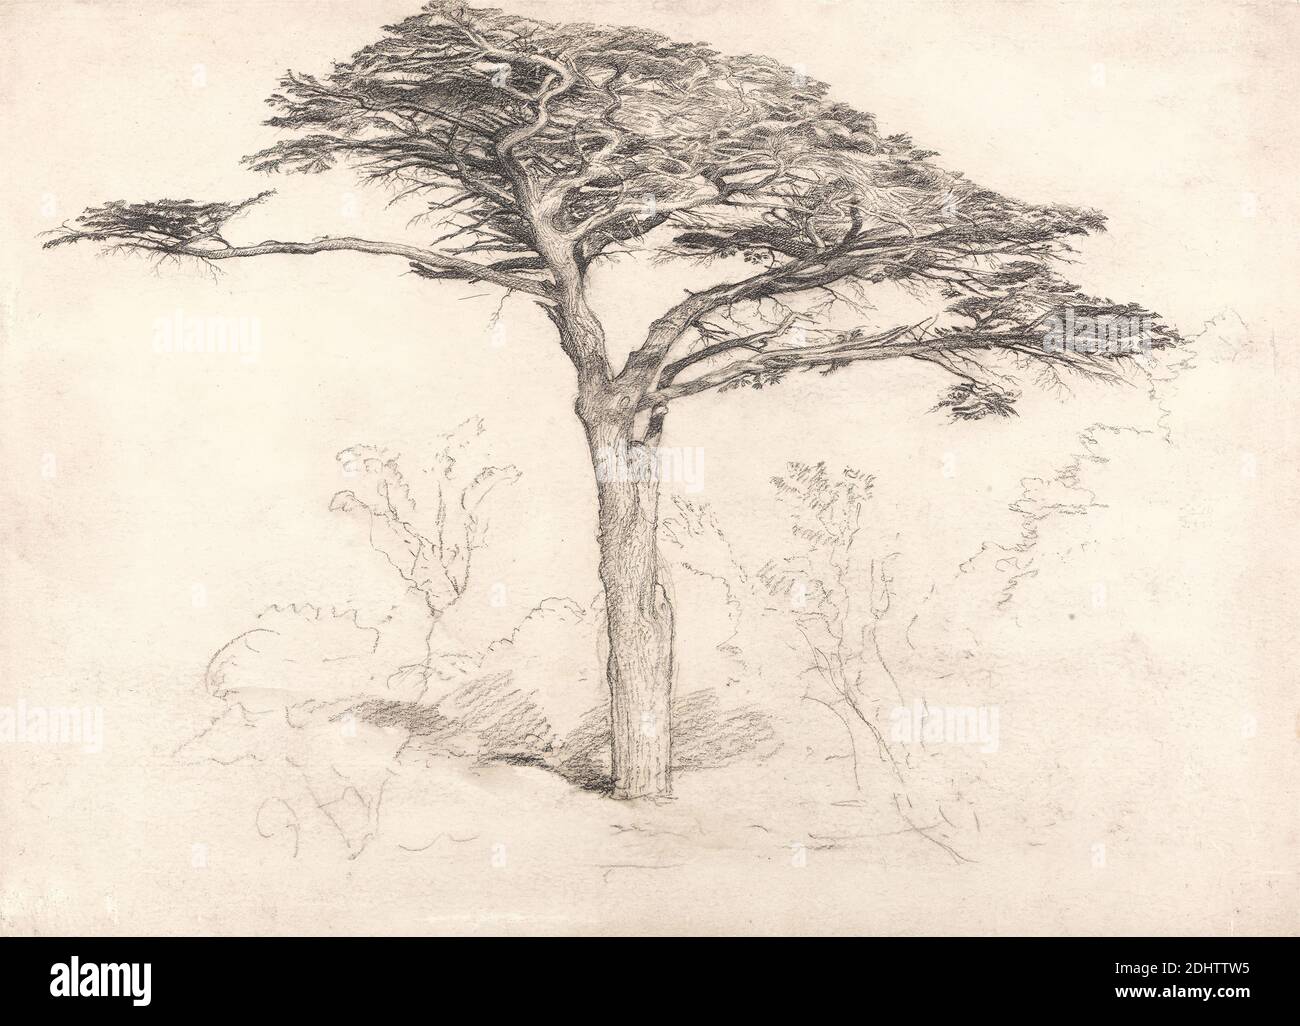 Alter Zedernbaum im Botanischen Garten, Chelsea, Samuel Palmer, 1805–1881, britisch, tätig in Italien (1837–39), 1854, schwarze Kreide und Graphit auf dickem, mäßig strukturiertem, cremefarbenem Papier, Blatt: 10 1/2 × 14 1/2 cm (36.8 × 26.7 Zoll) und Rahmen: 17 1/4 x 23 1/2 x 1 Zoll (43.8 x 59.7 x 2,5 cm), Zeder, Landschaft, Baum, Chelsea, Chelsea Physic Garden, England, Europa, London, Vereinigtes Königreich Stockfoto